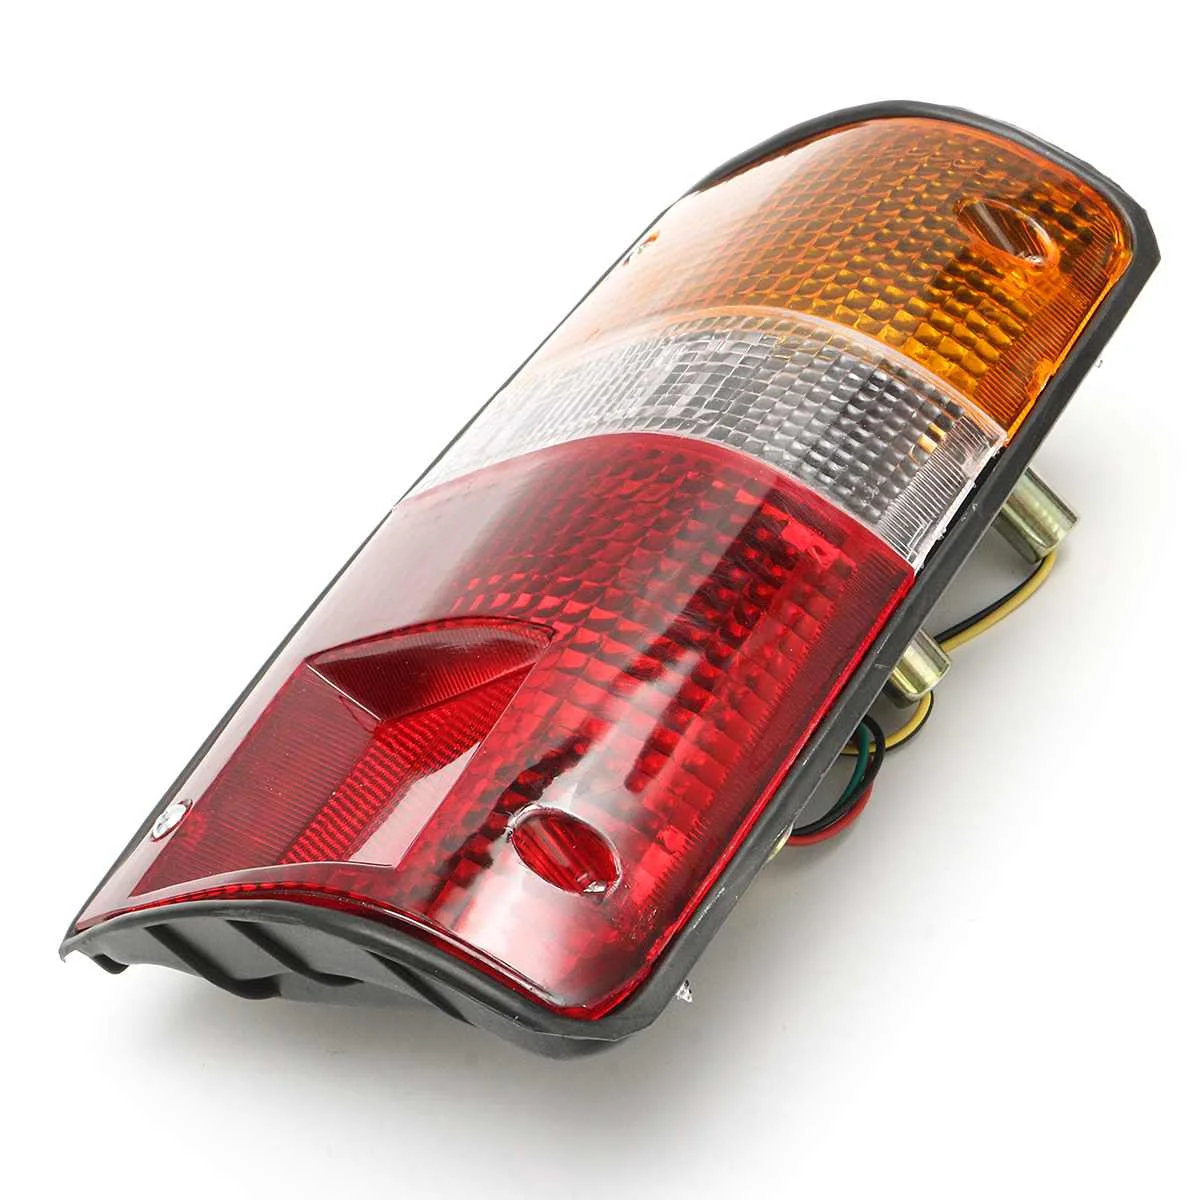 1 предмет для 89-94 Toyoto Hilux пикап MK3 LN RN YN автомобиля правый задний хвост световой сигнал лампы Аварийные огни сзади Запчасти